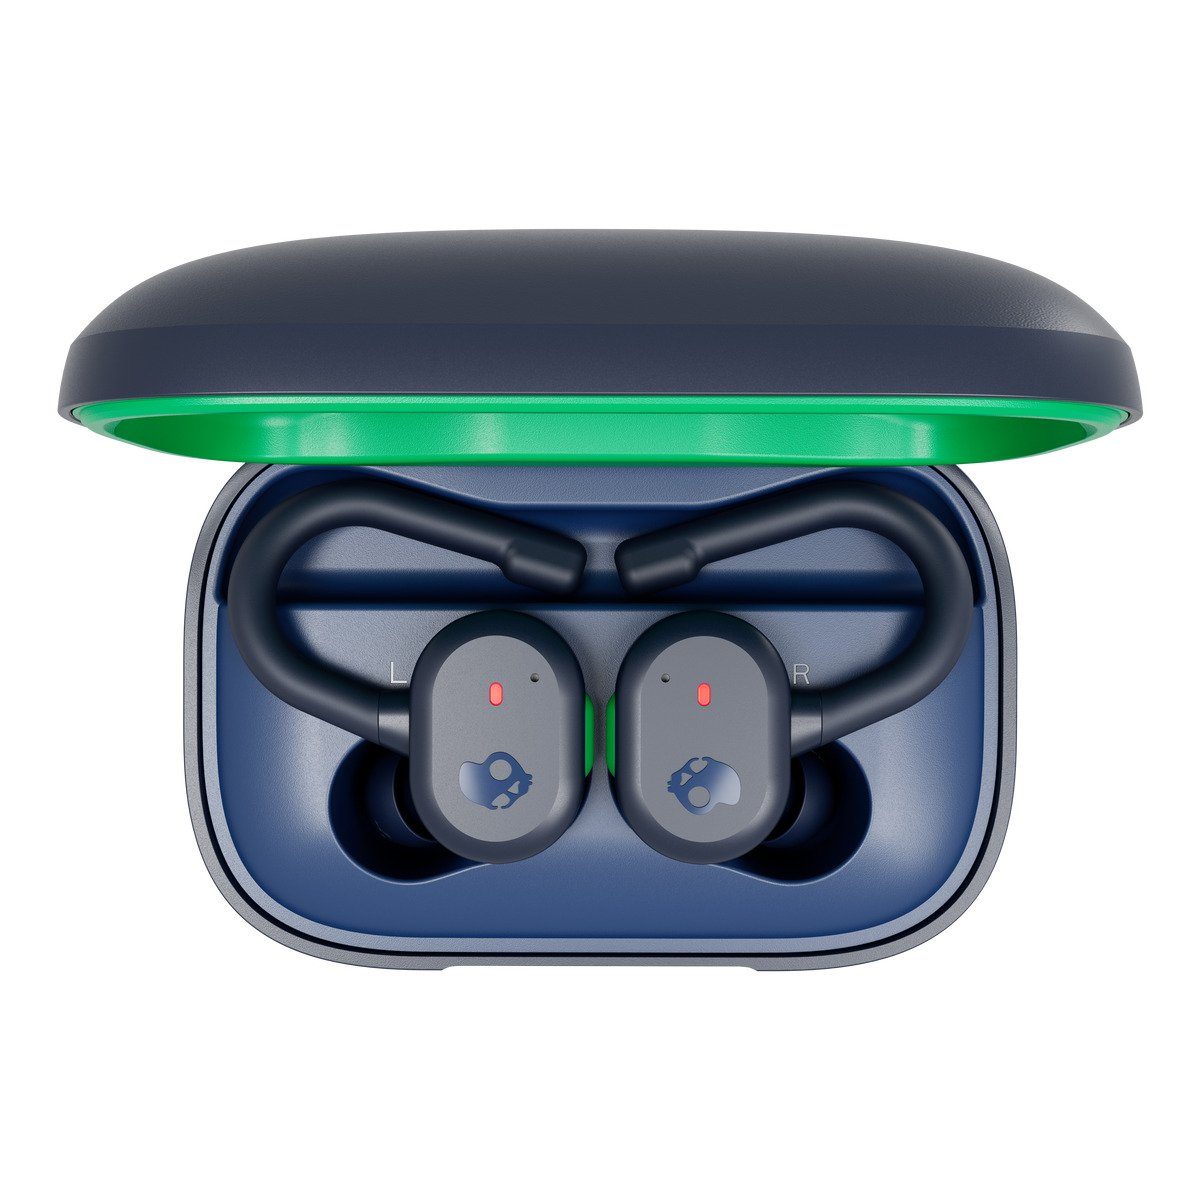 Hörvergnügen!, 44 Wireless) Mikrofon!, Integriertes Sprachsteuerung, IN-EAR wireless Wireless Skull-iQ pures Headset Wasserresistenz Schweiß- (IP55)!, Skull-iQ (True-Wireless-In-Ear-Kopfhörer!, In-Ear-Kopfhörer True Blue/Green Active Push Skullcandy TW und Stunden Sprachsteuerung!,